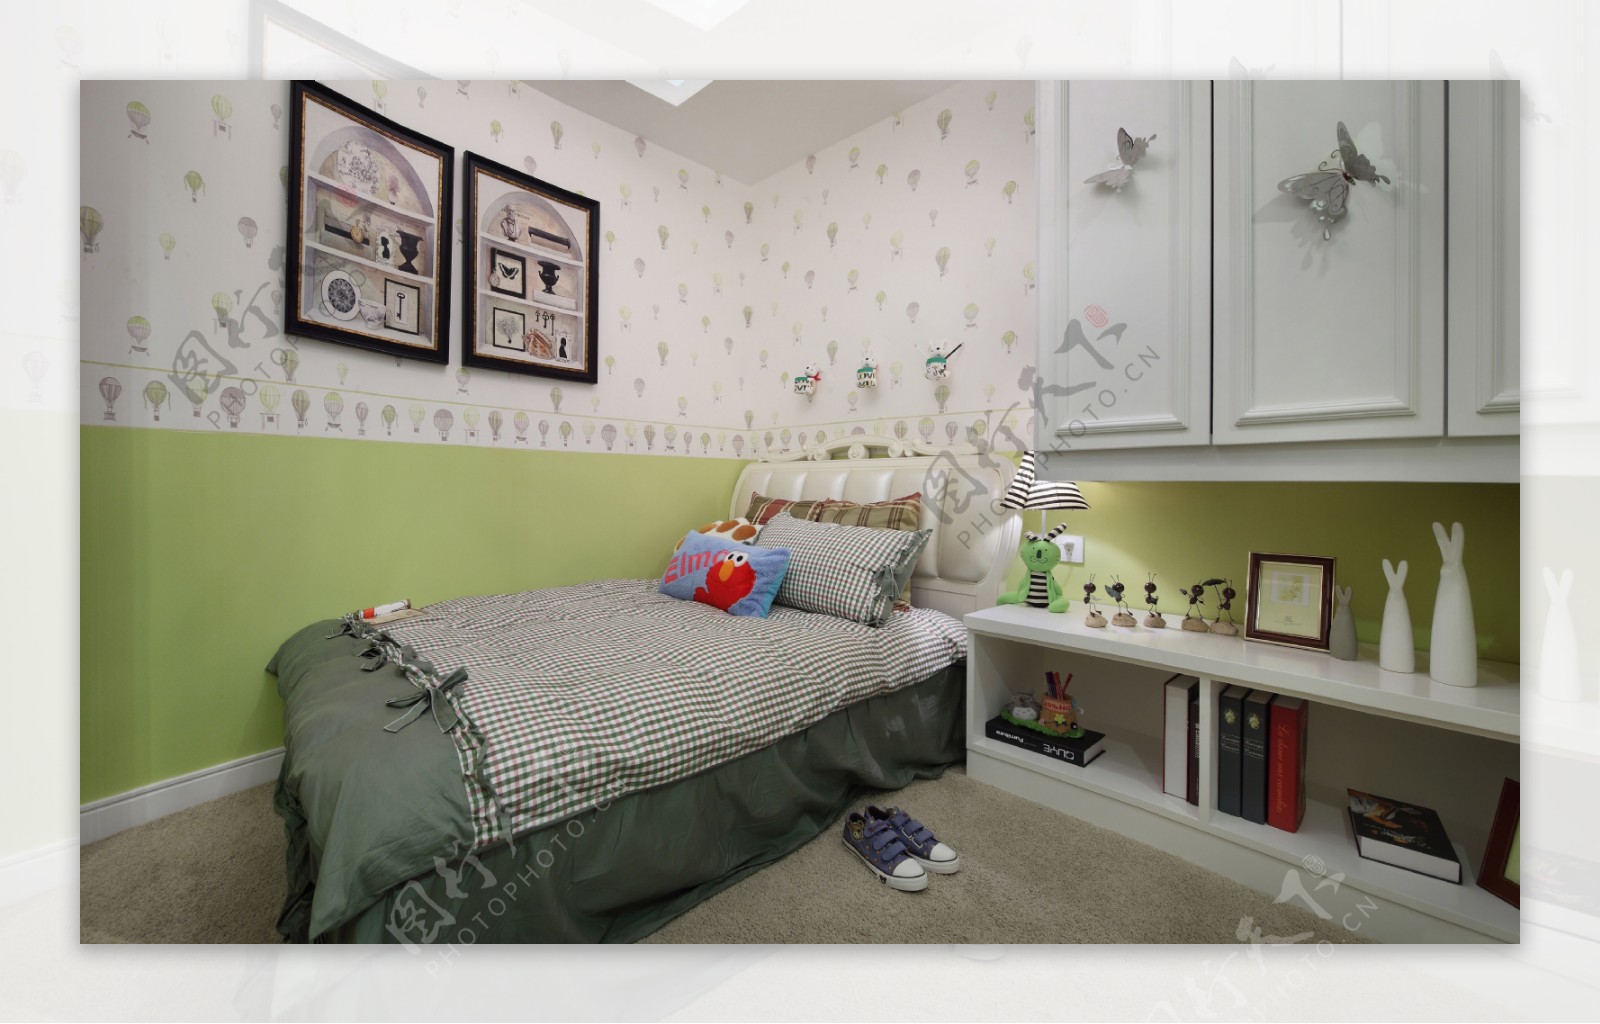 小清新卧室深绿色床品室内装修效果图